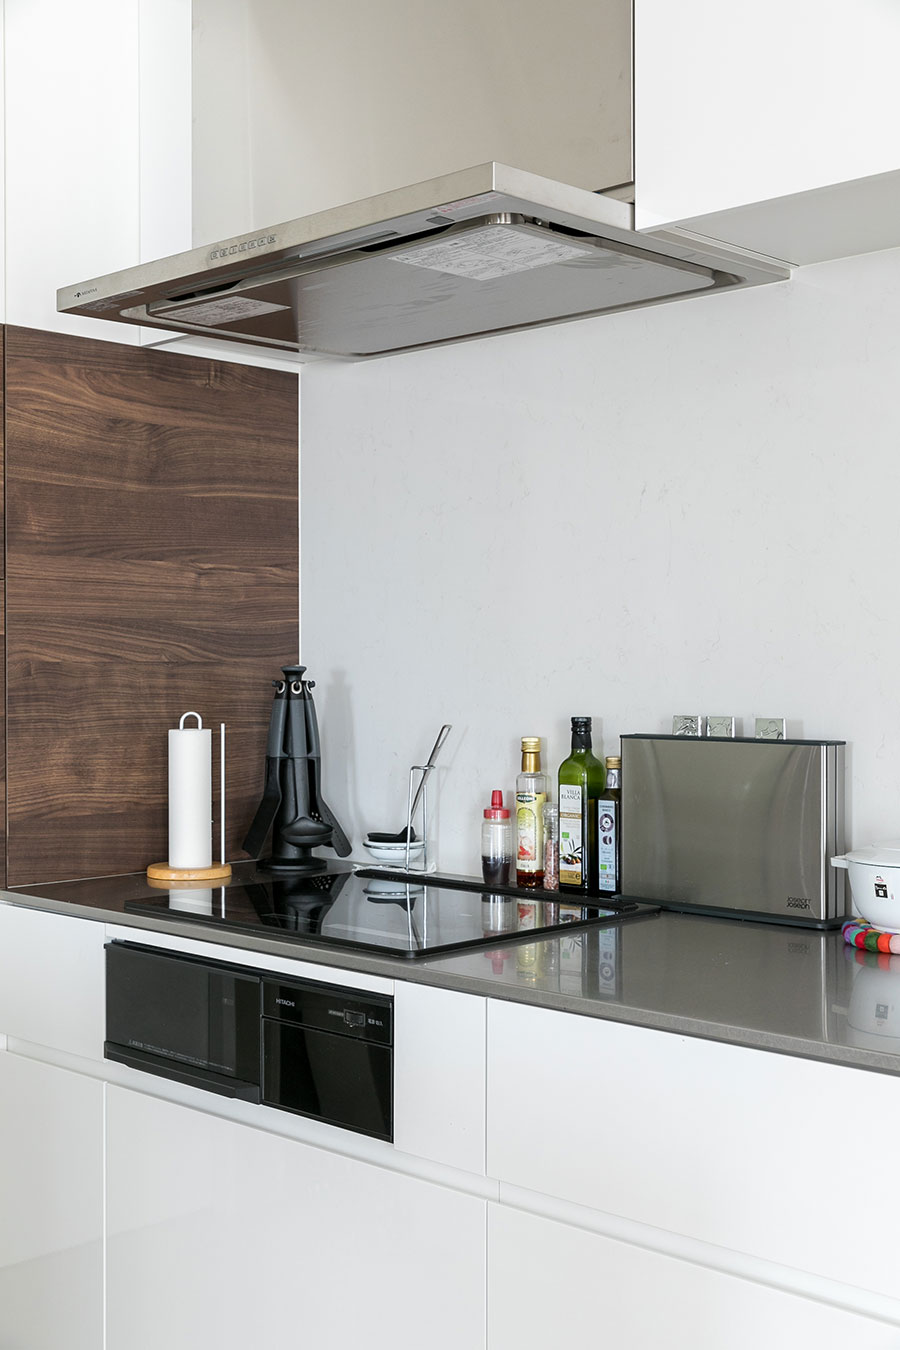 壁付キッチンにIHコンロを設置し、天板は熱に強いステンレスを採用。壁材はシーザーストーン。